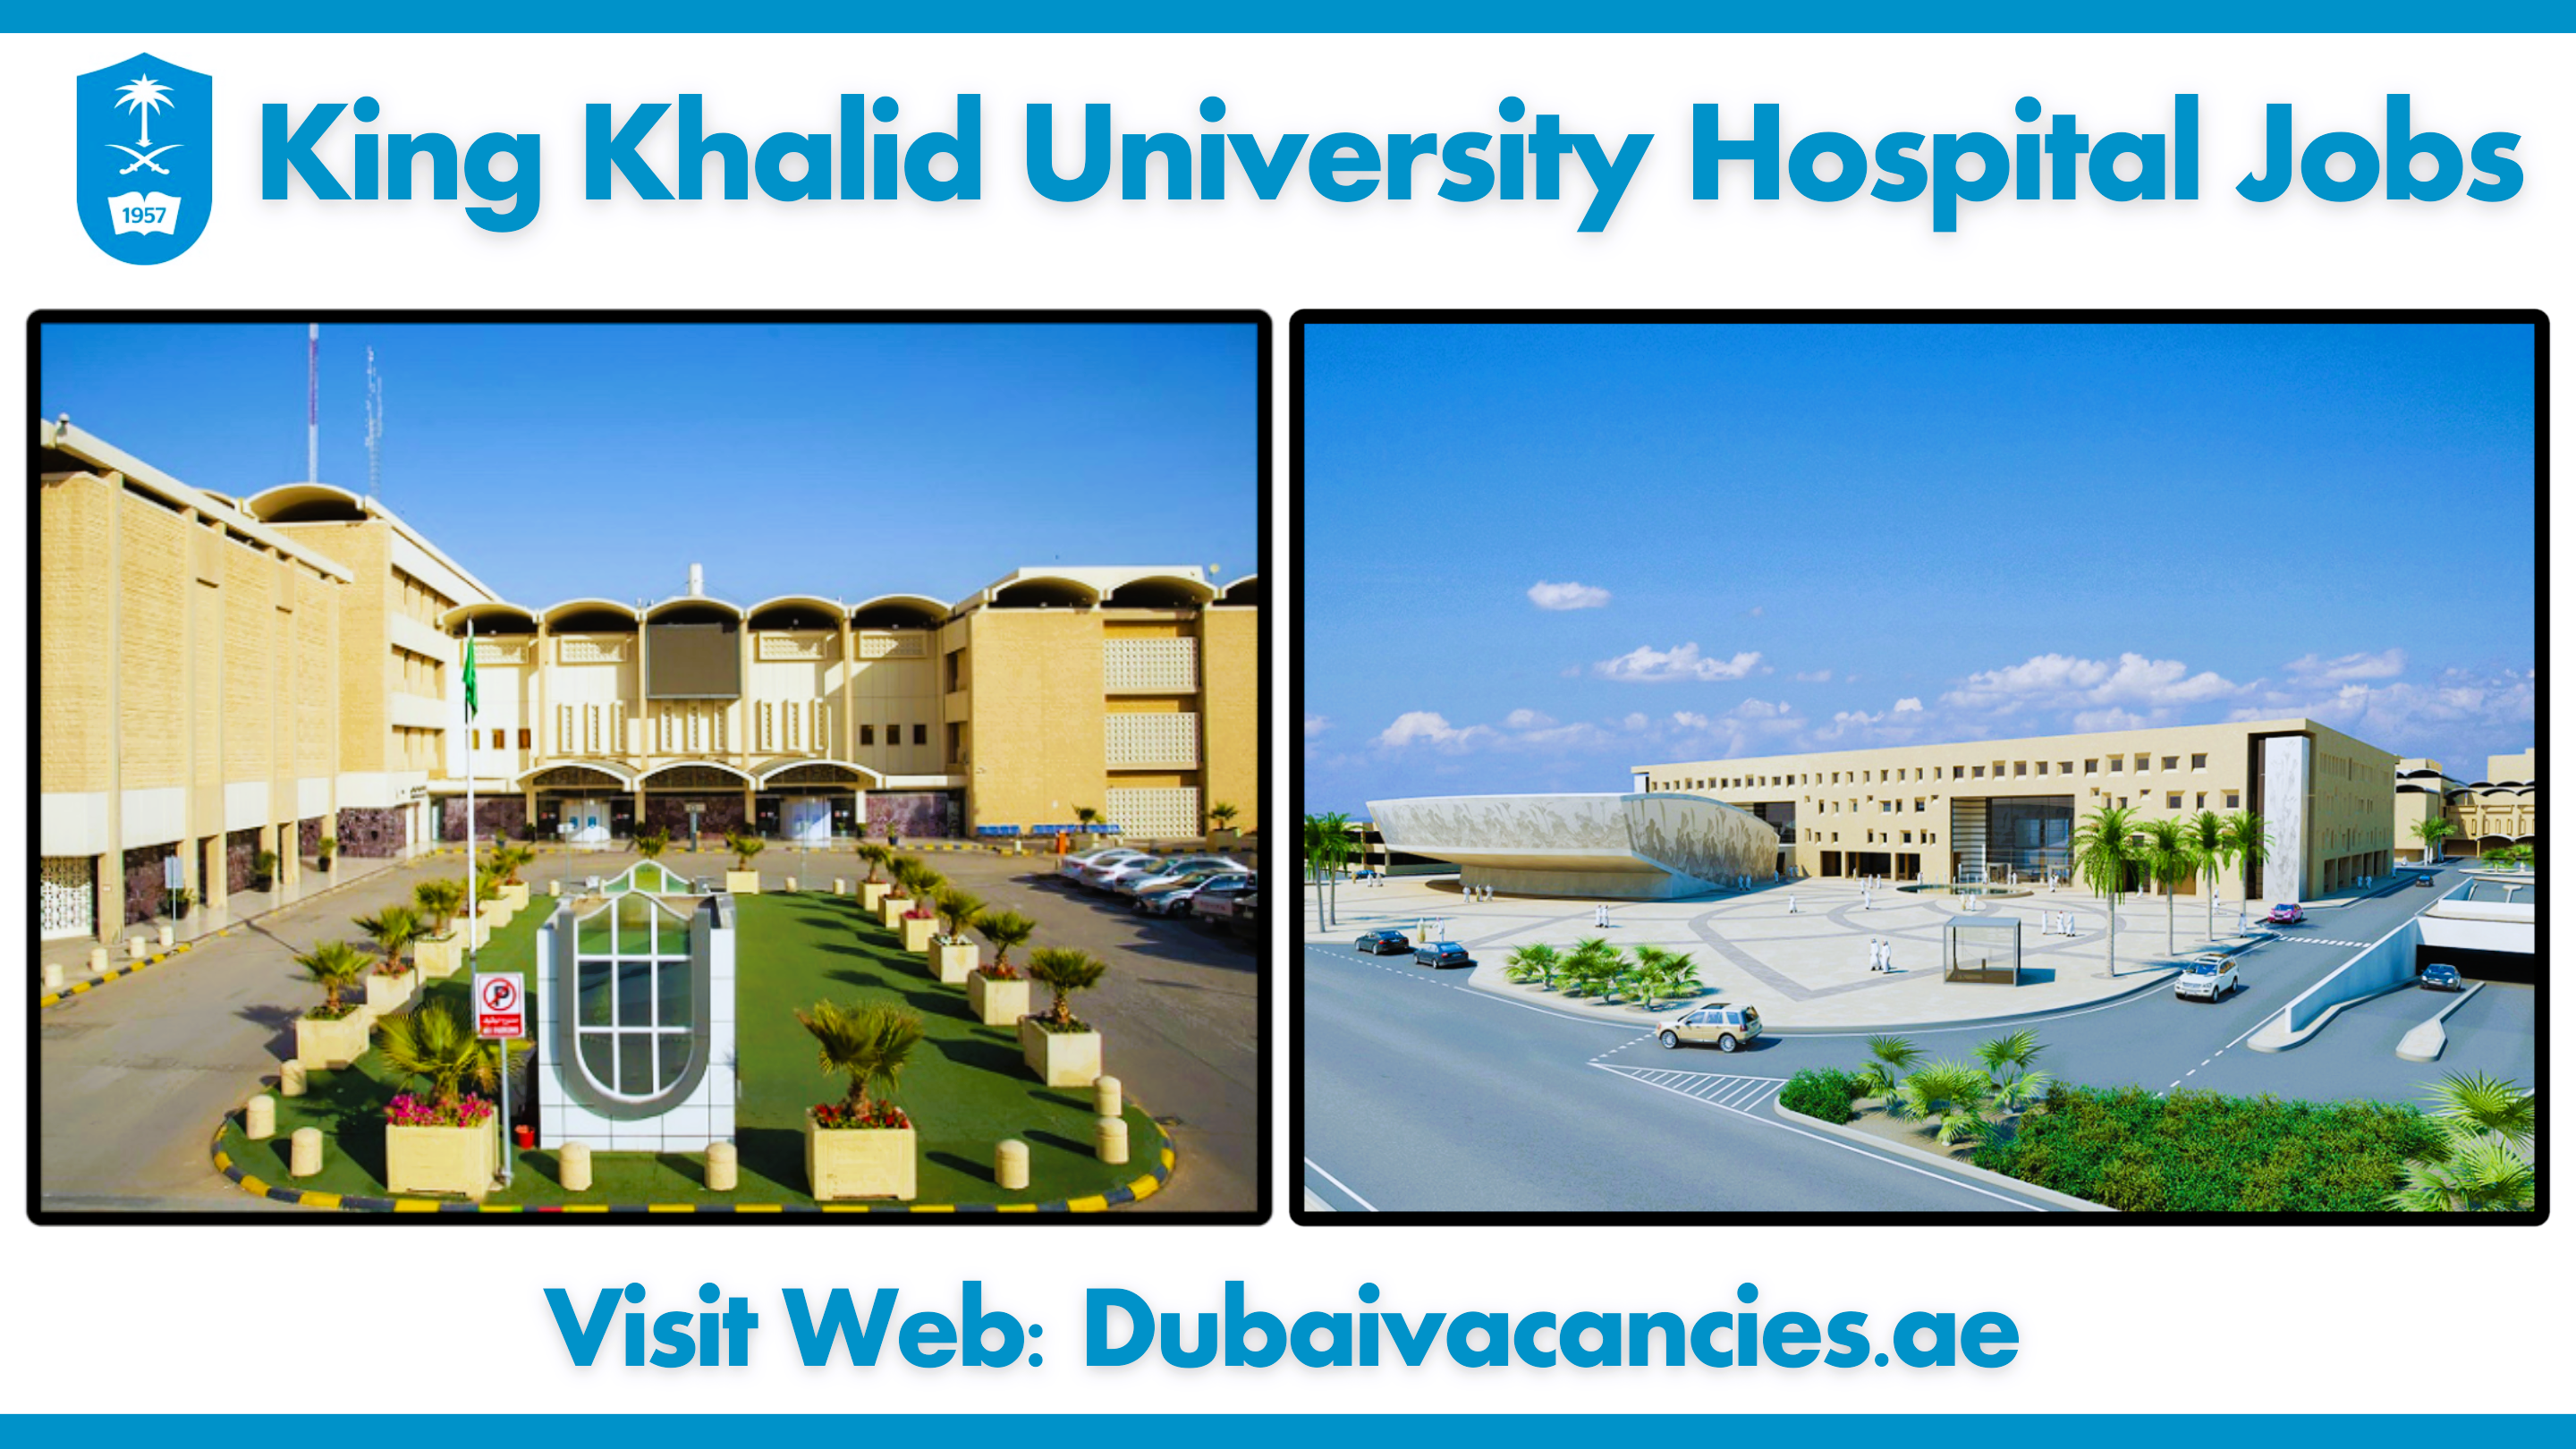 King Khalid University Hospital Jobs